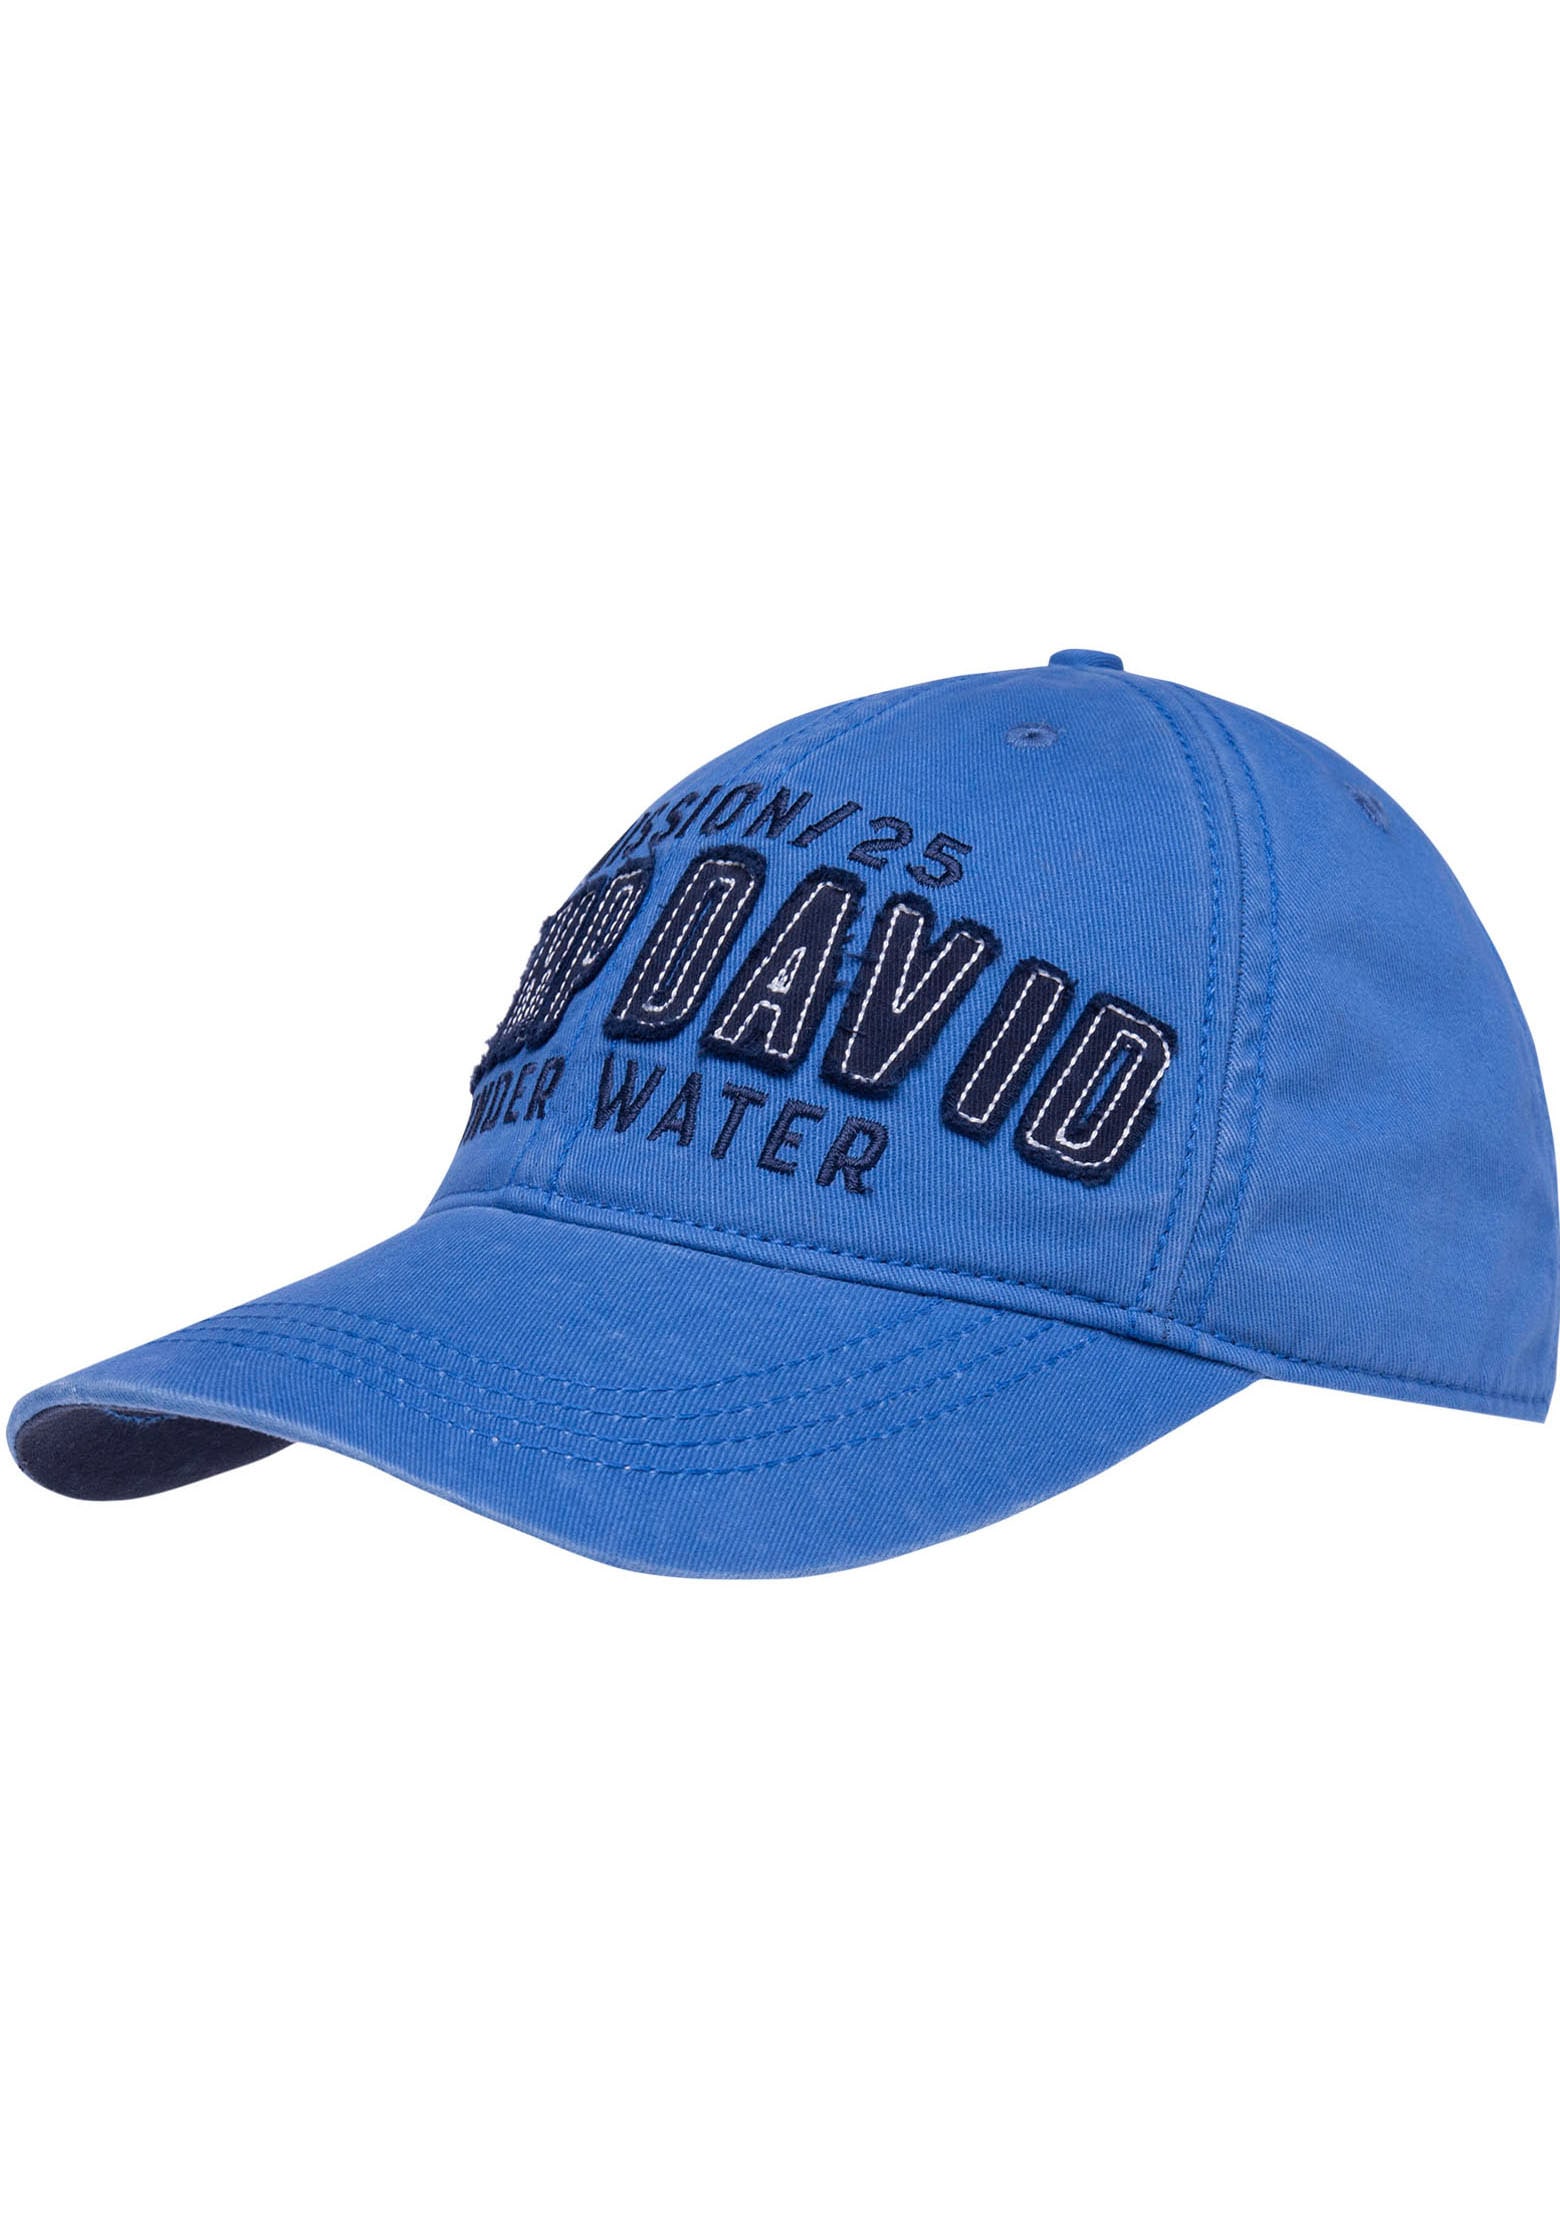 CAMP DAVID Baseball Cap, mit gewaschener shoppen Optik bei online OTTO